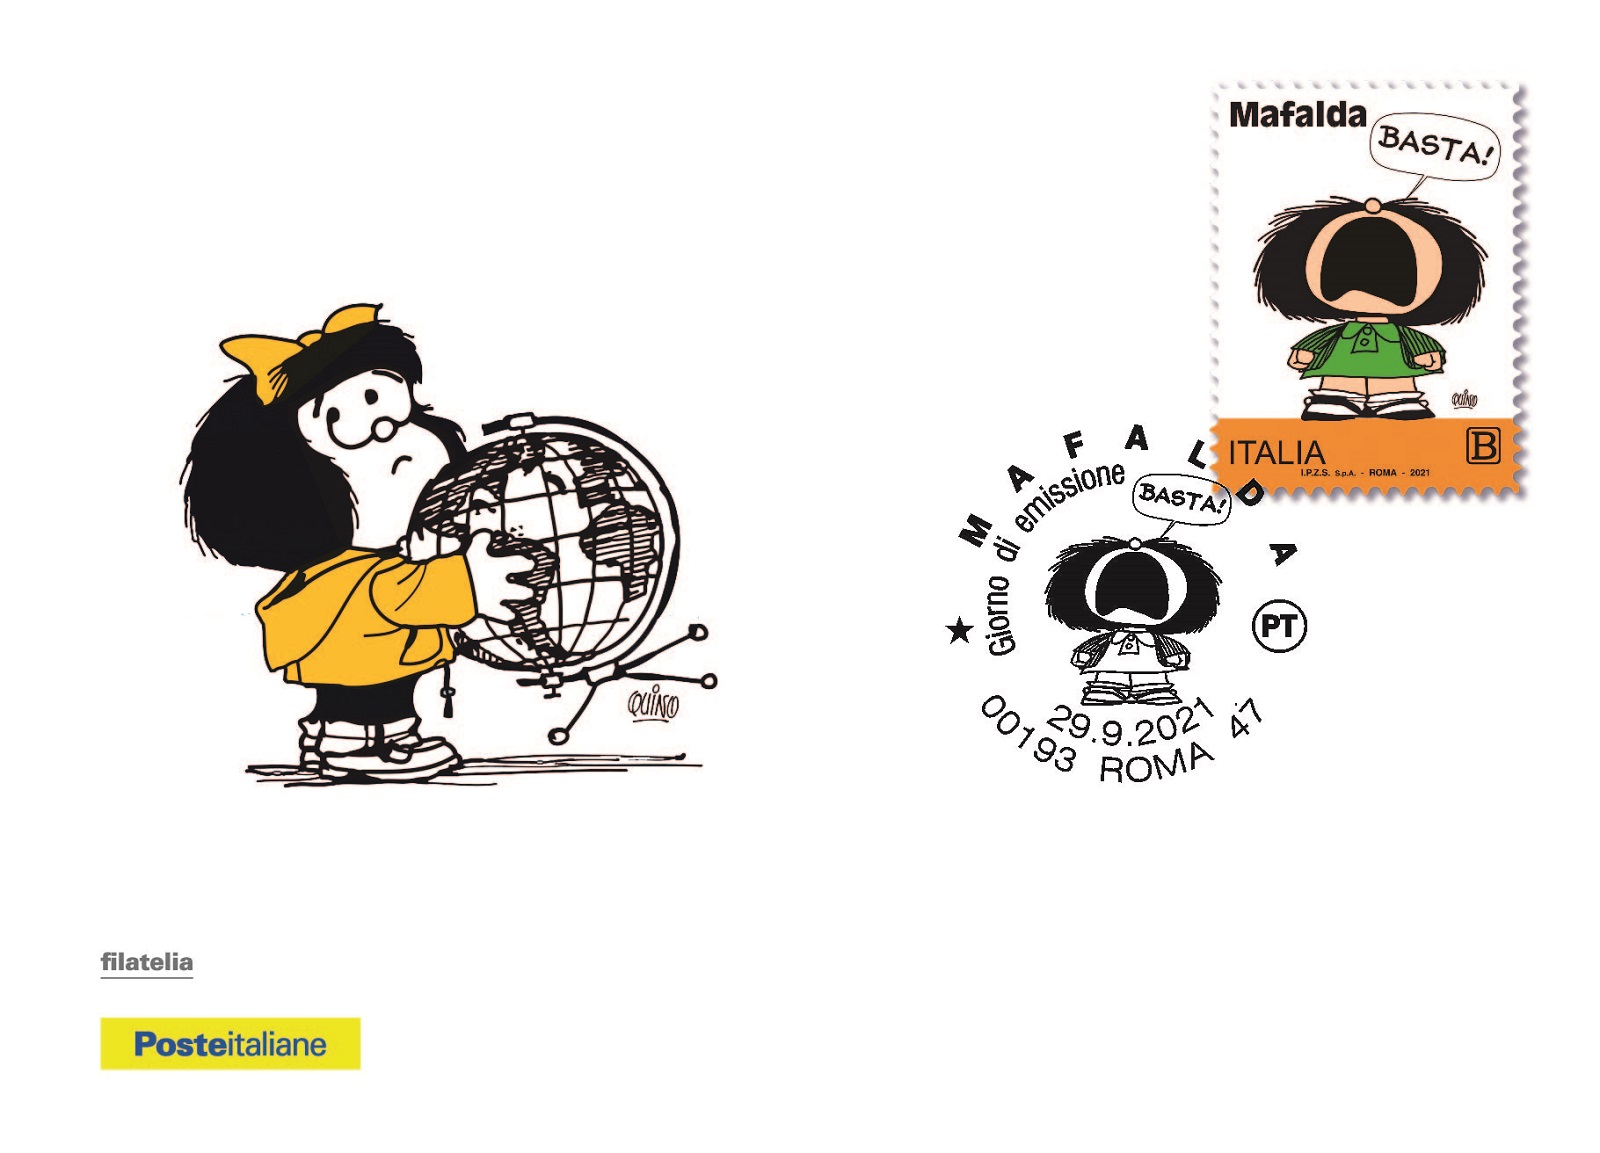 Ricordando Quino: un francobollo per Mafalda